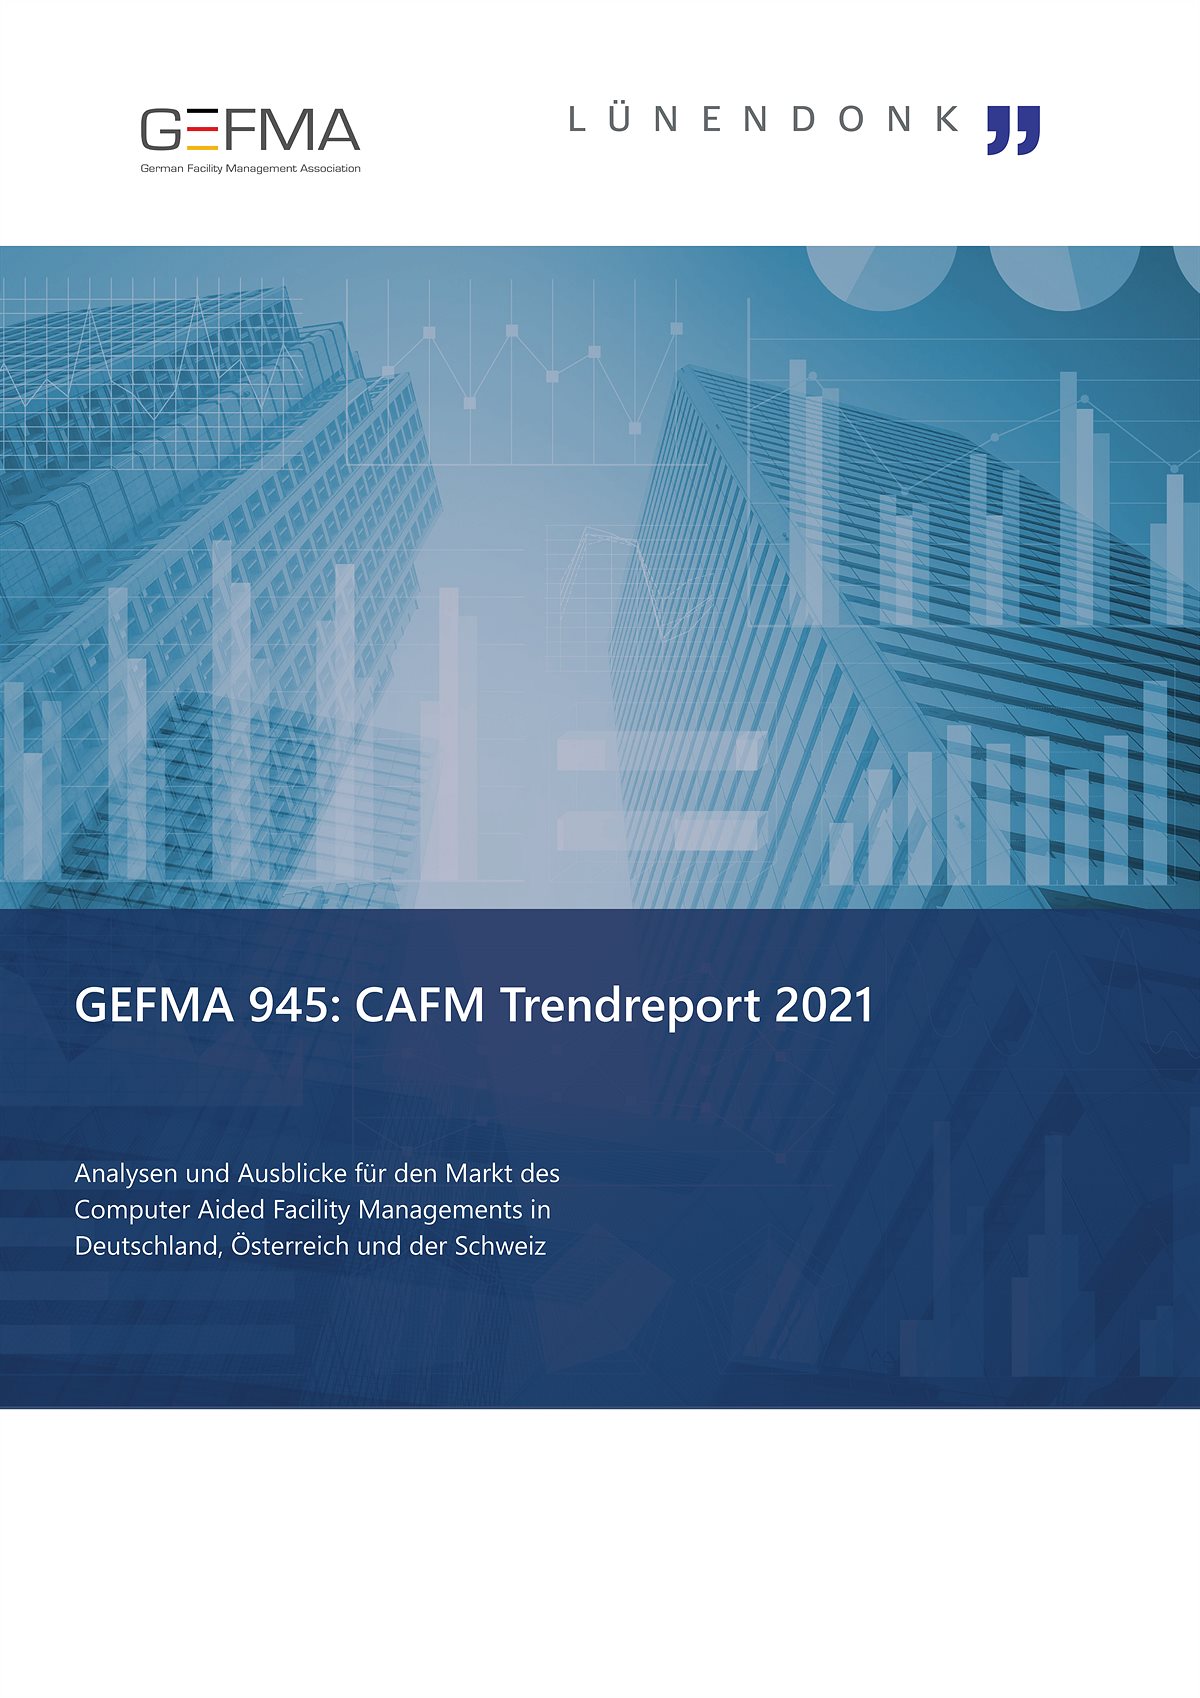 GEFMA CAFM-Trendreport 2021